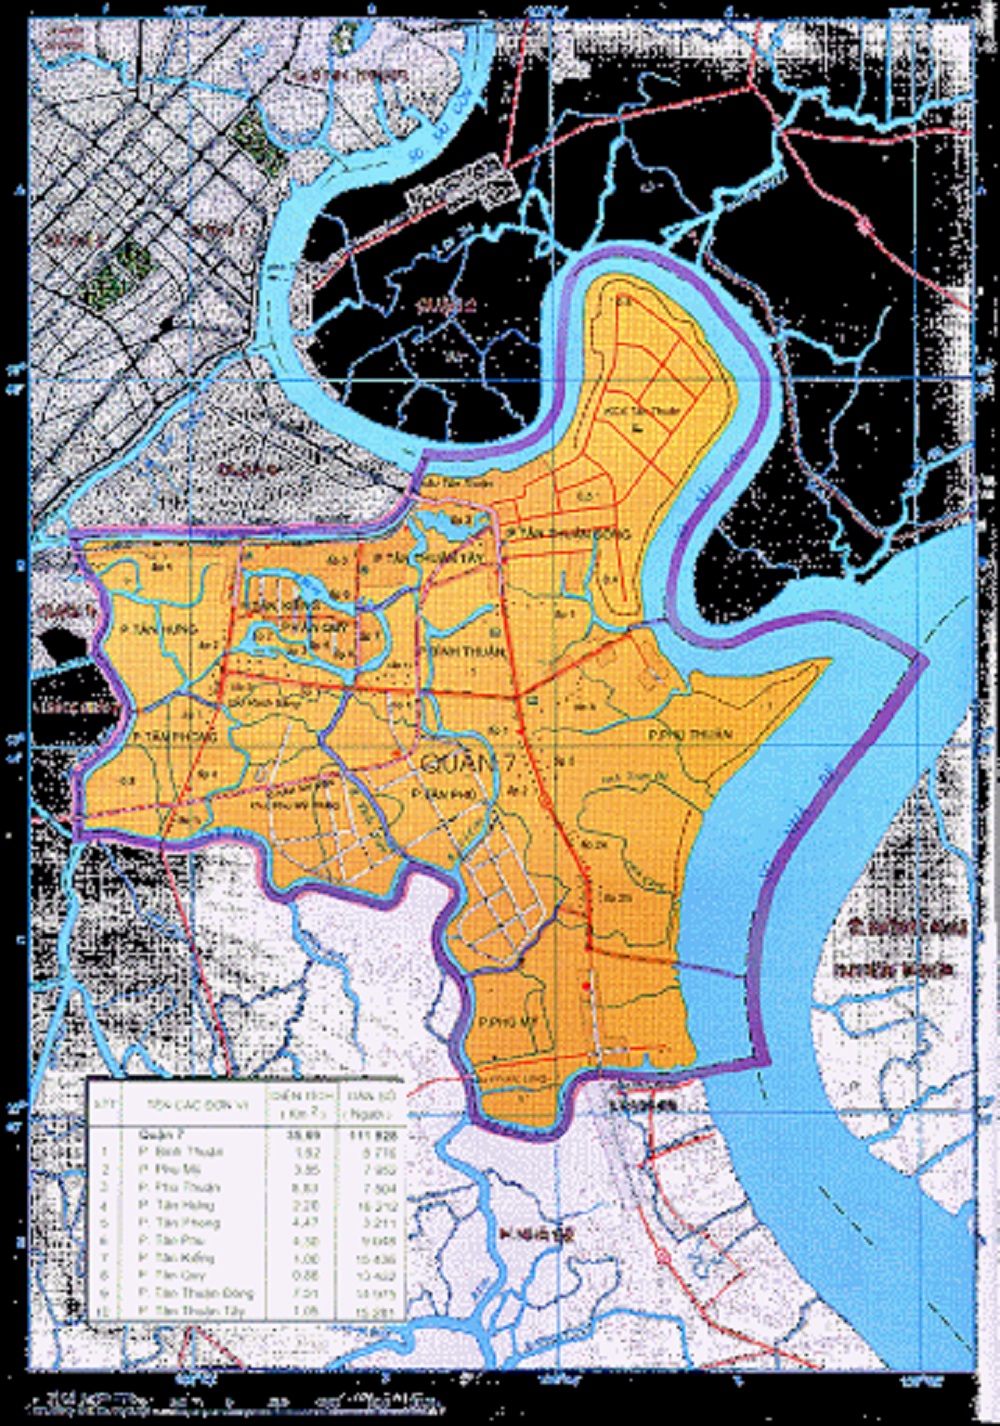 Bản đồ quận 7: Bản đồ quận 7 luôn phát triển vững mạnh với các dự án đang triển khai. Thật tuyệt vời khi có thể dễ dàng tra cứu địa điểm và kết nối cộng đồng thông qua bản đồ quận 7 hiện đại và tiện lợi.